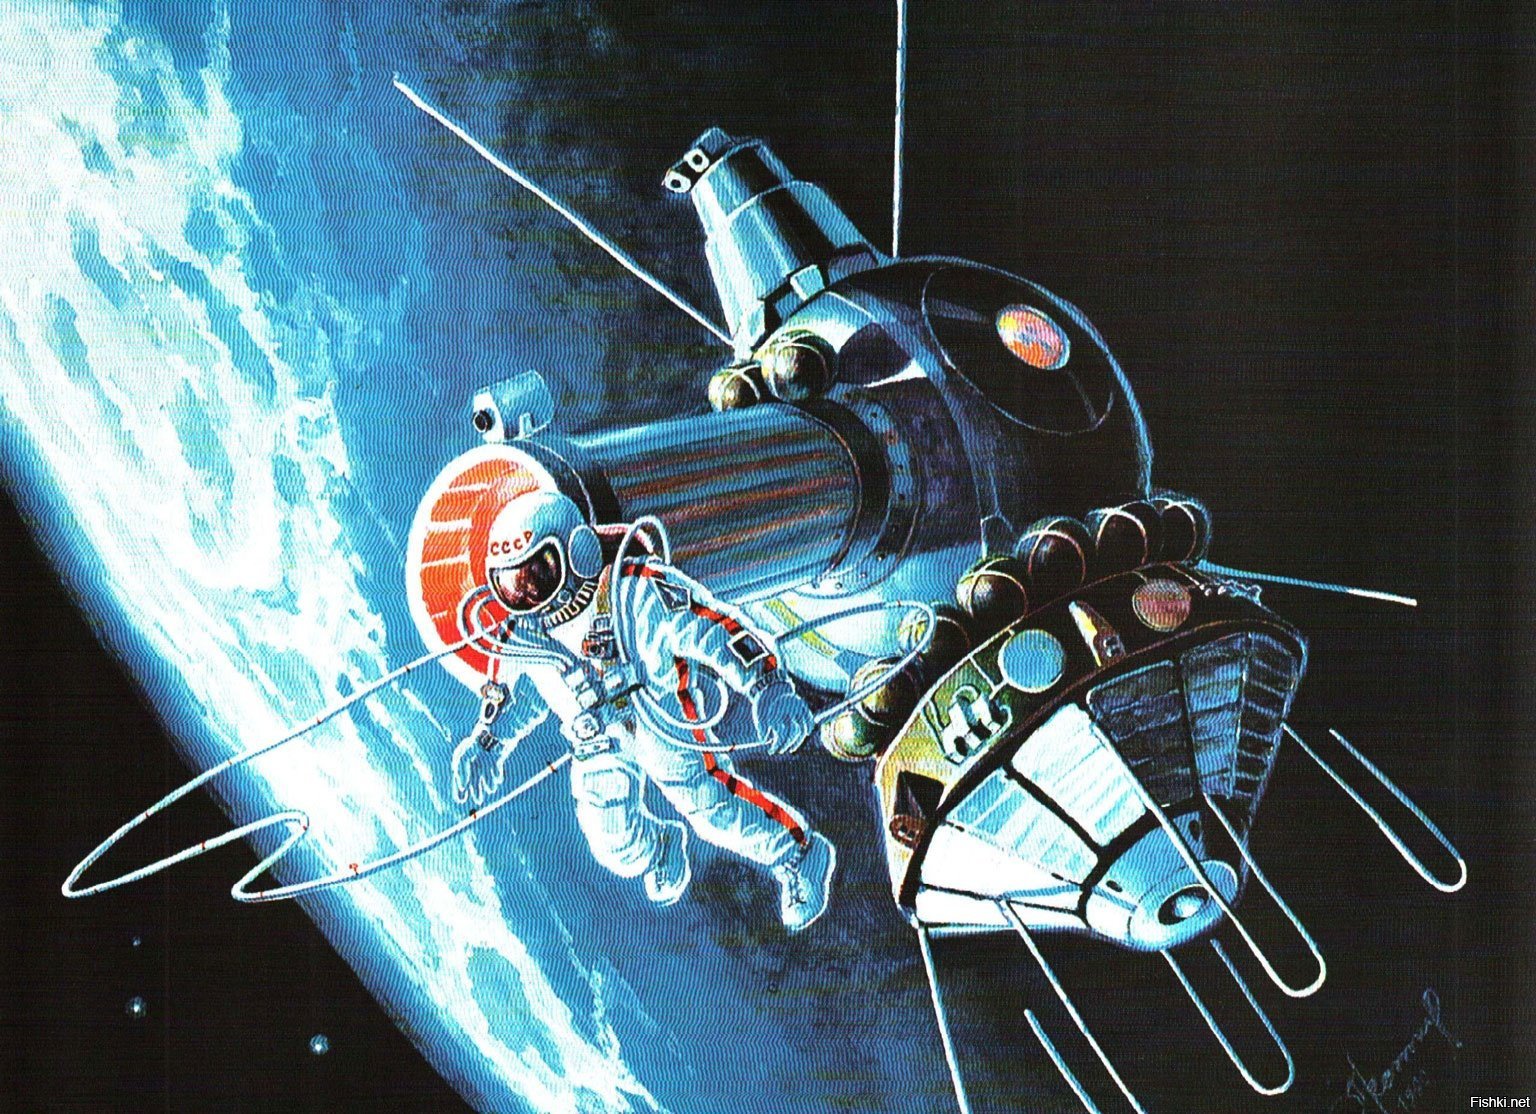 Первый космический корабль вышедший в космос. Картины Космонавта Алексея Леонова космос. Картин Алексея Леонова Союз-Аполлон.